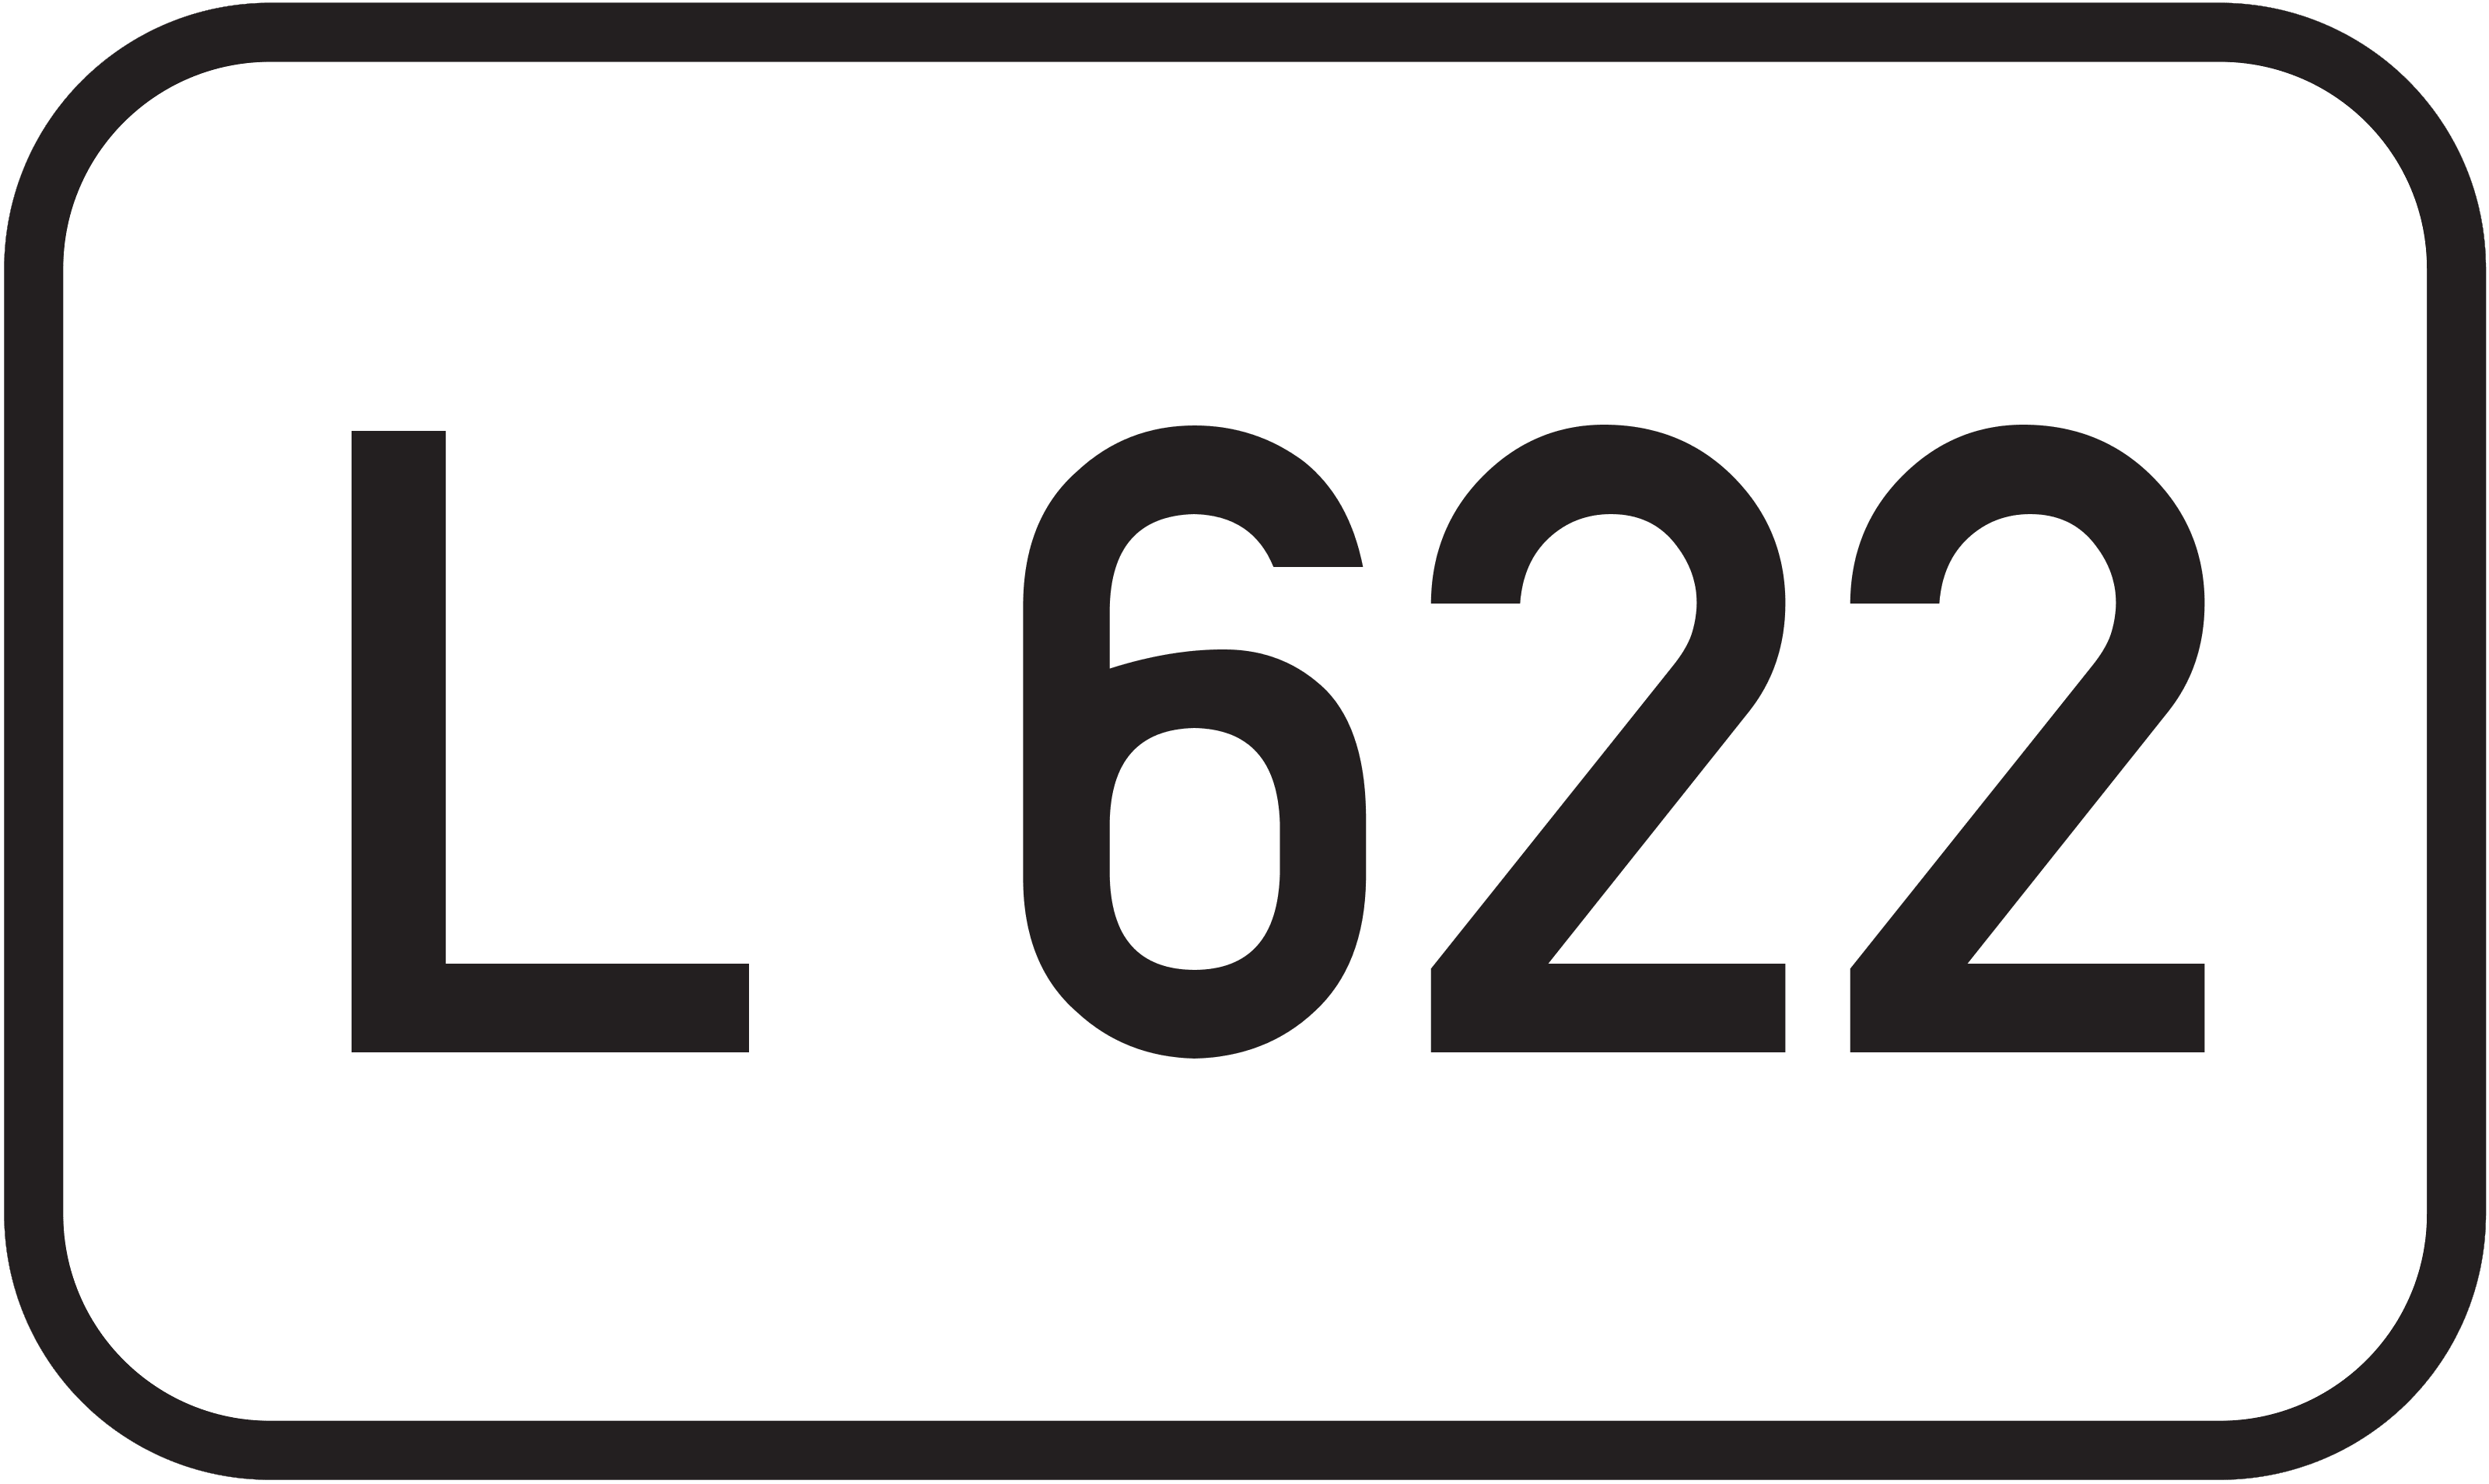 Landesstraße L 622